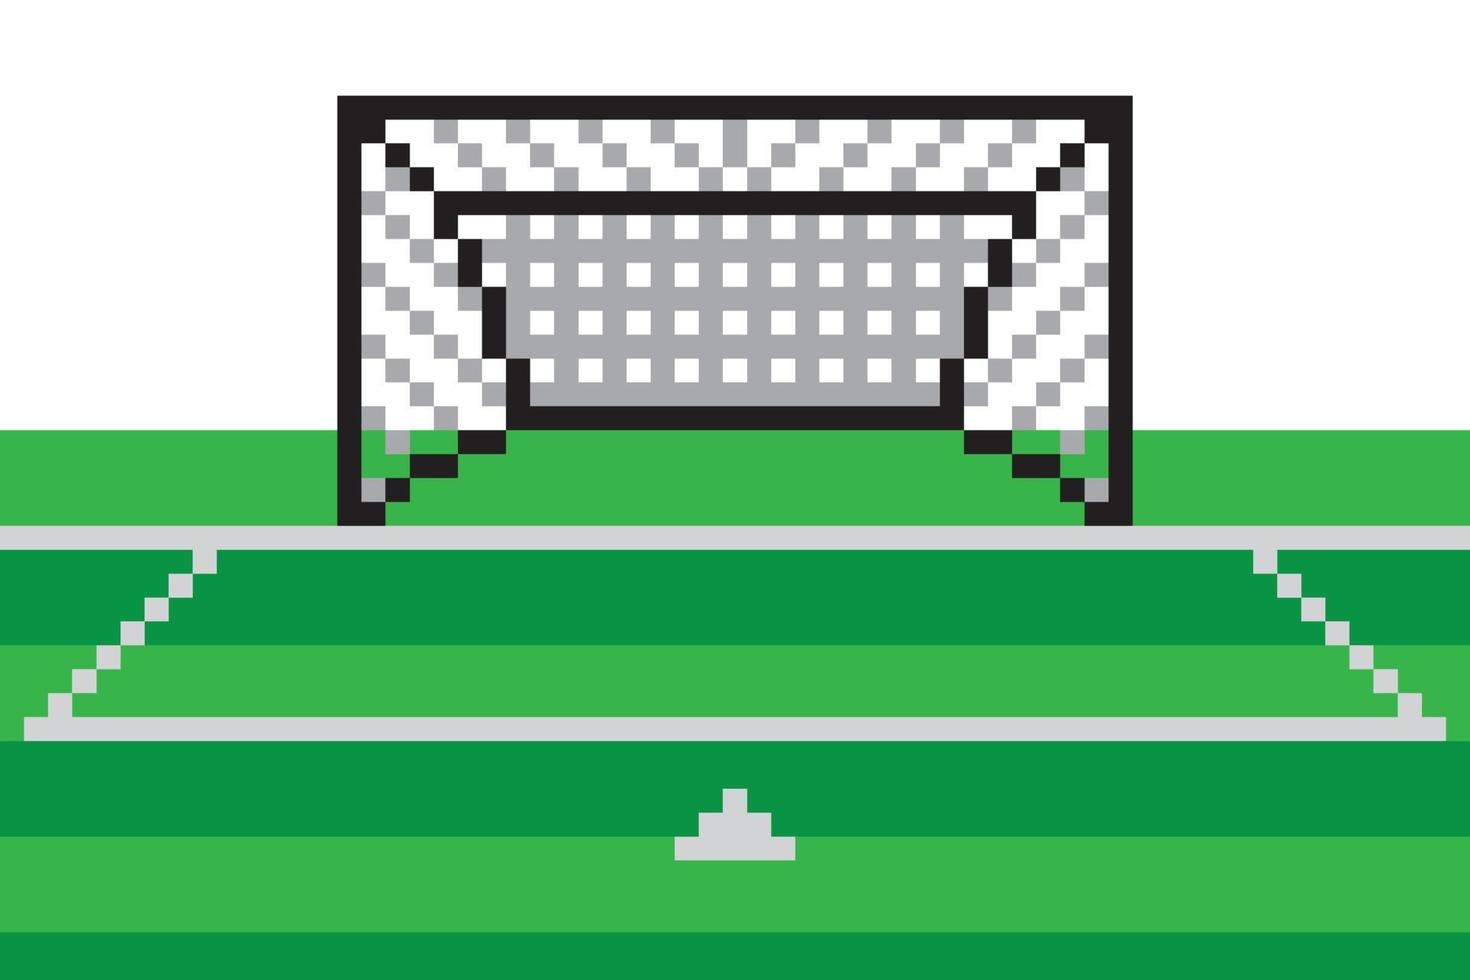 terrain de but de football pixel art vecteur